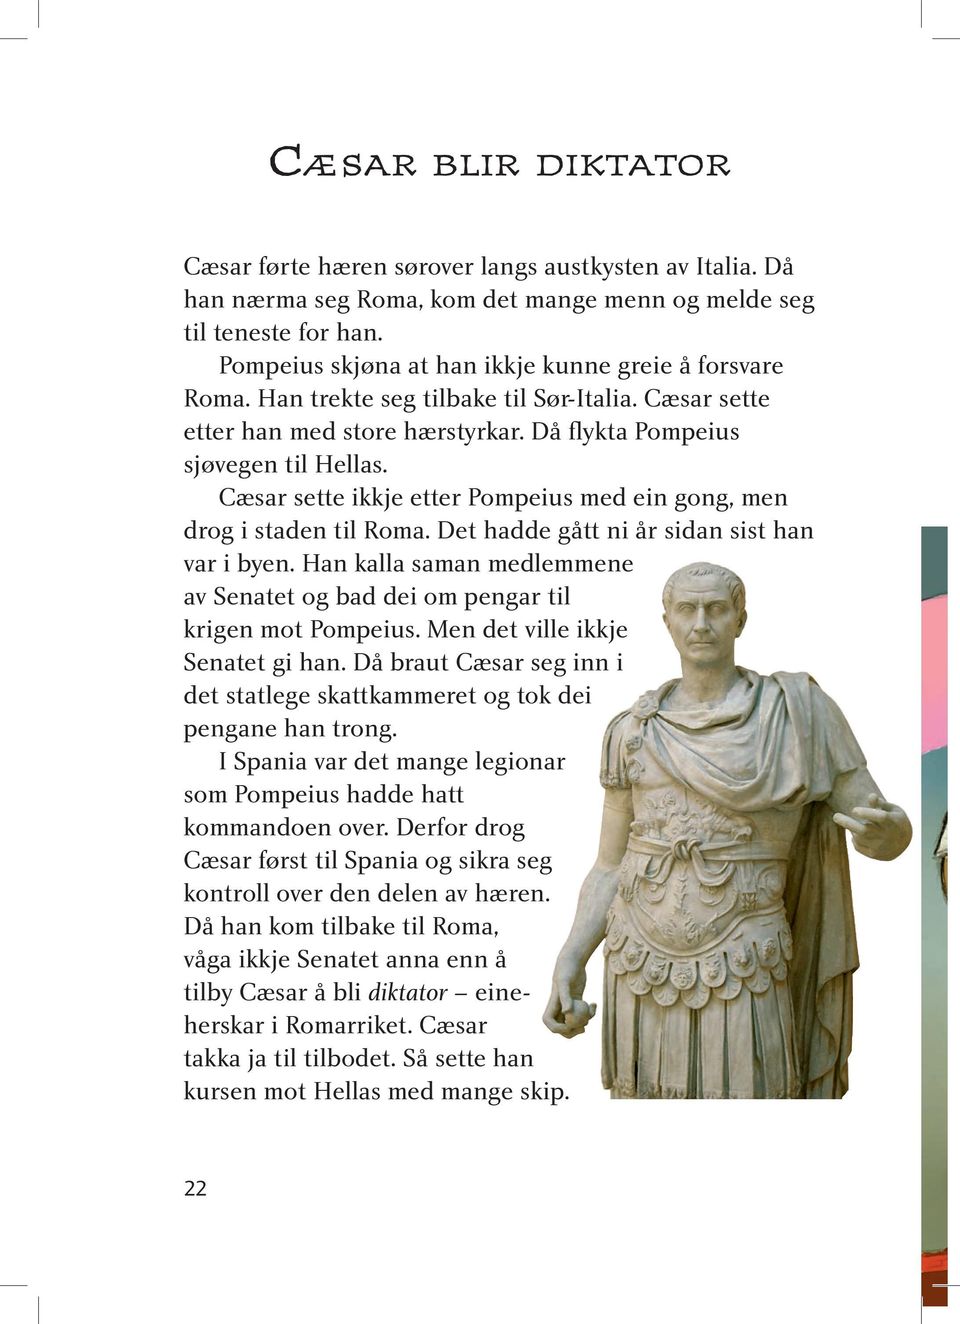 Cæsar sette ikkje etter Pompeius med ein gong, men drog i staden til Roma. Det hadde gått ni år sidan sist han var i byen.